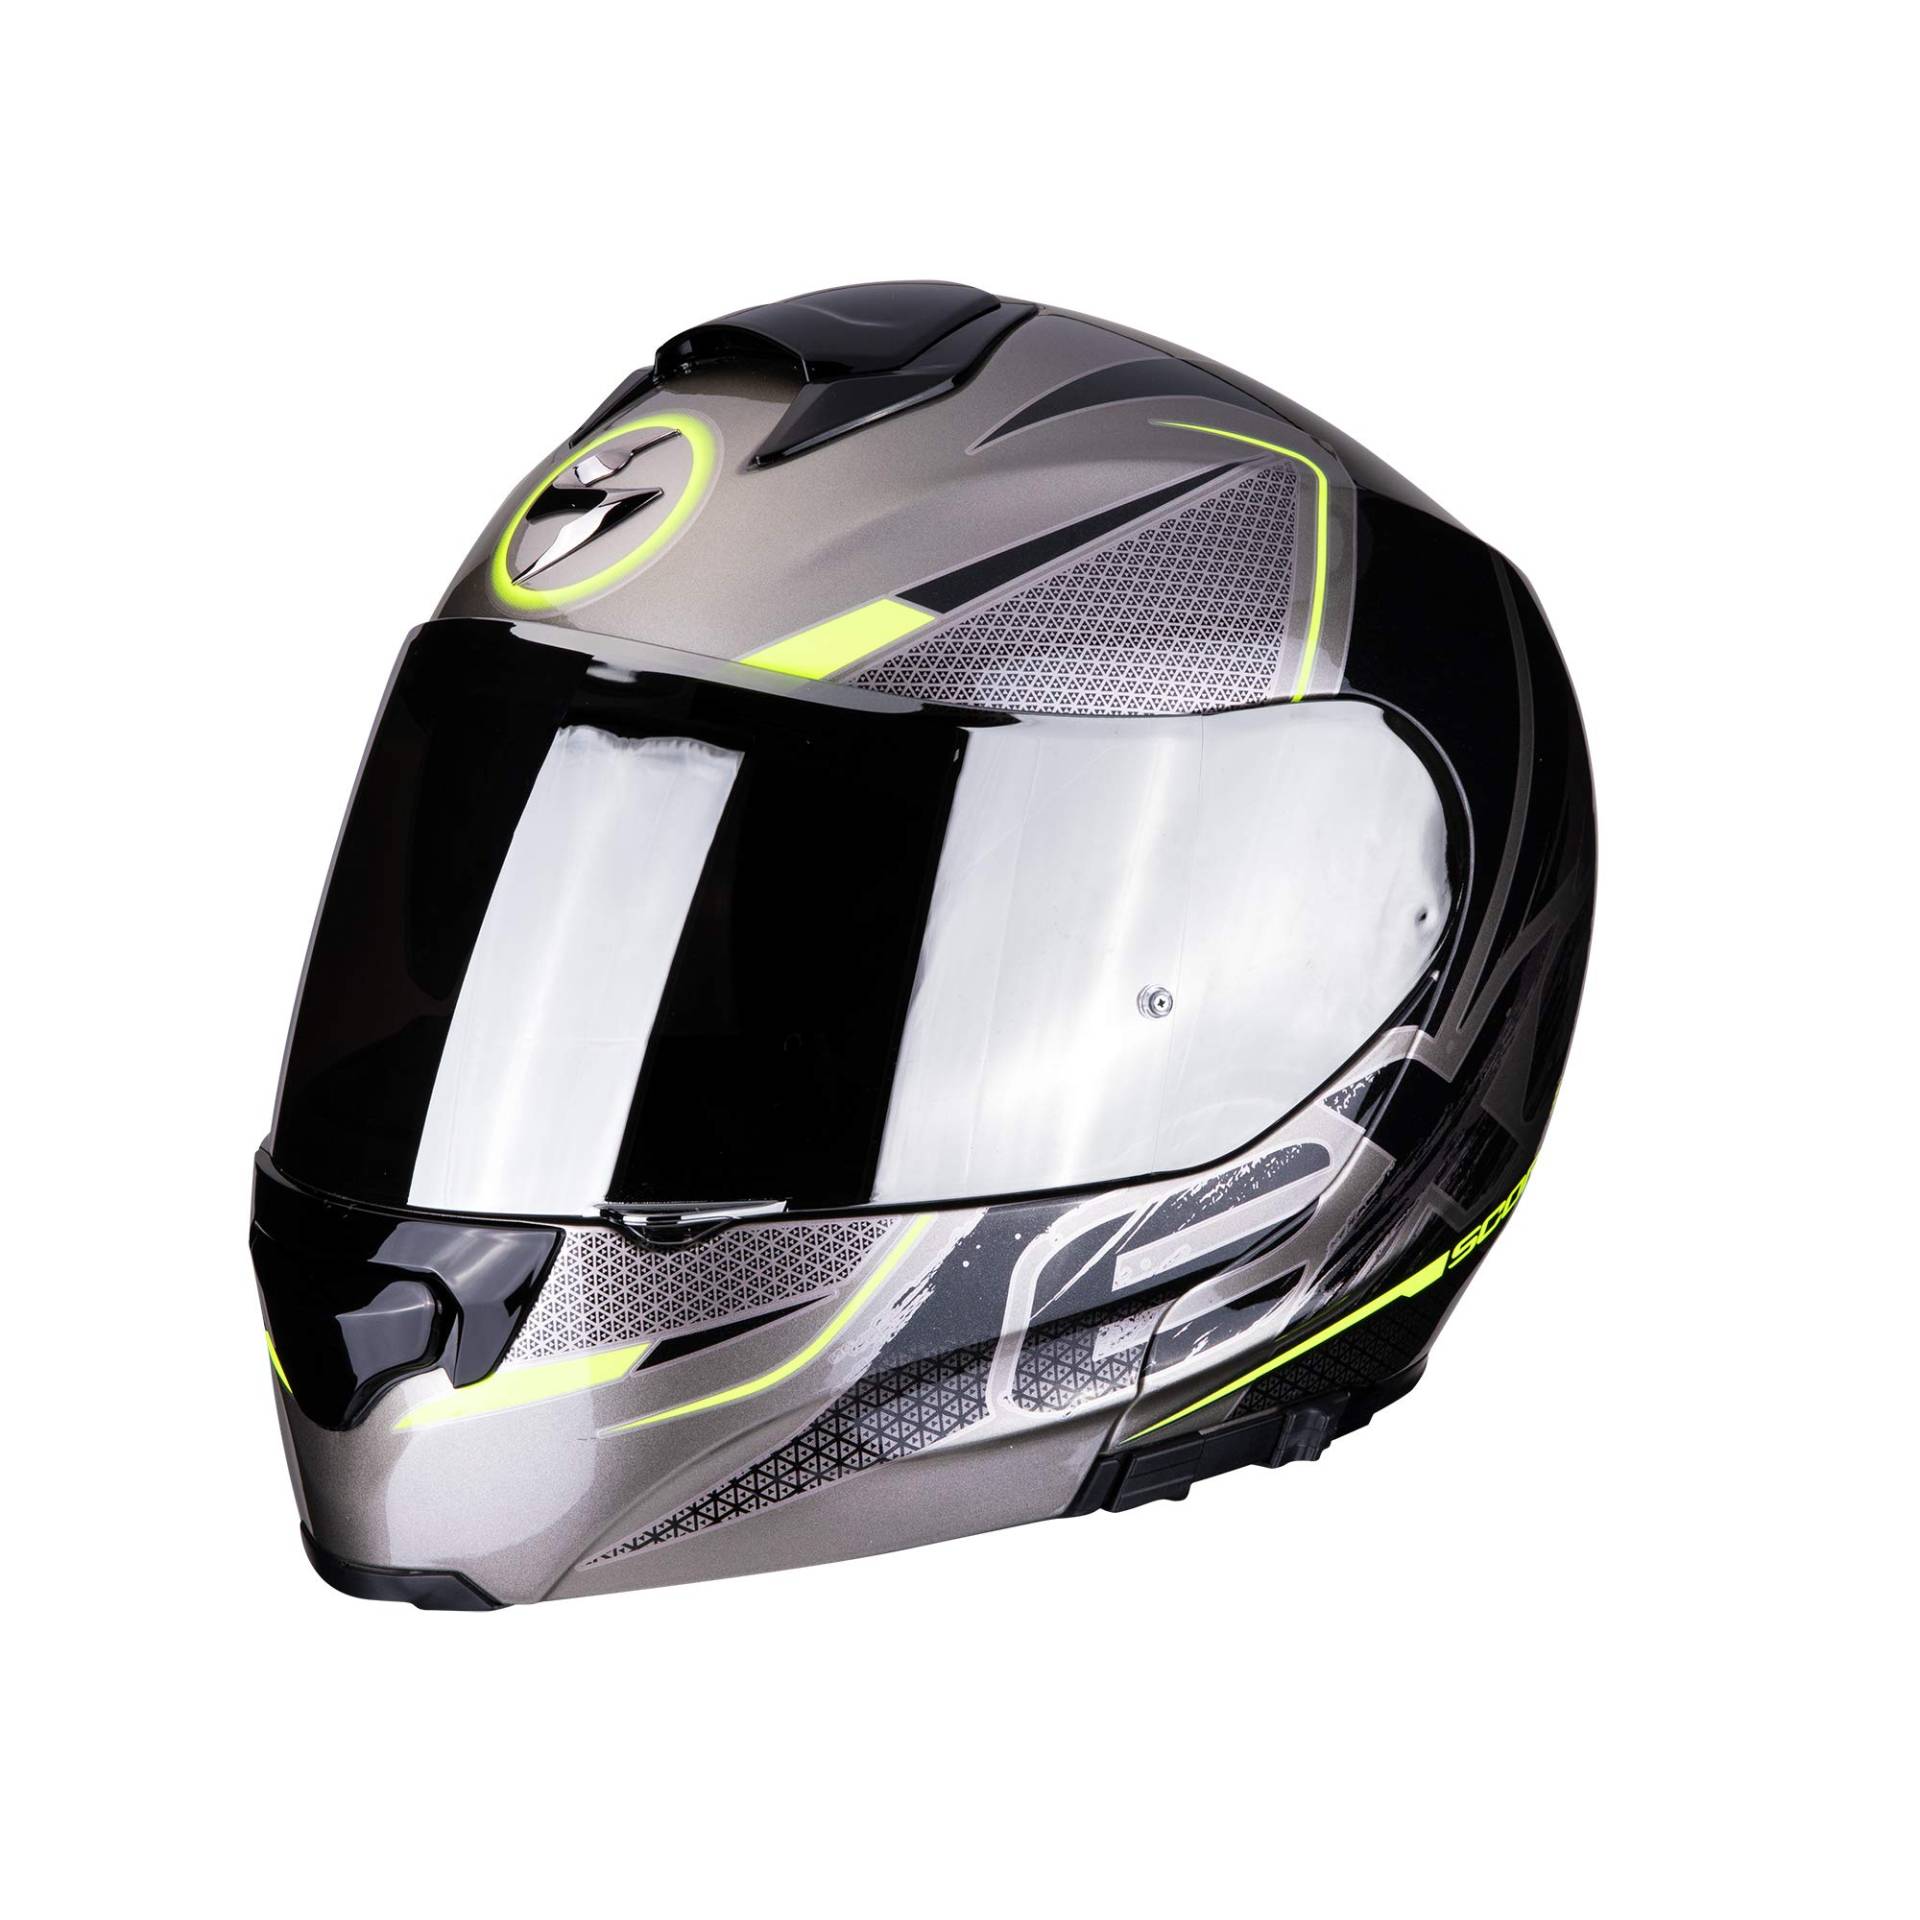 Scorpion Unisex – Erwachsene NC Motorrad Helm, Grau/Schwarz/Fluo, XL von Scorpion